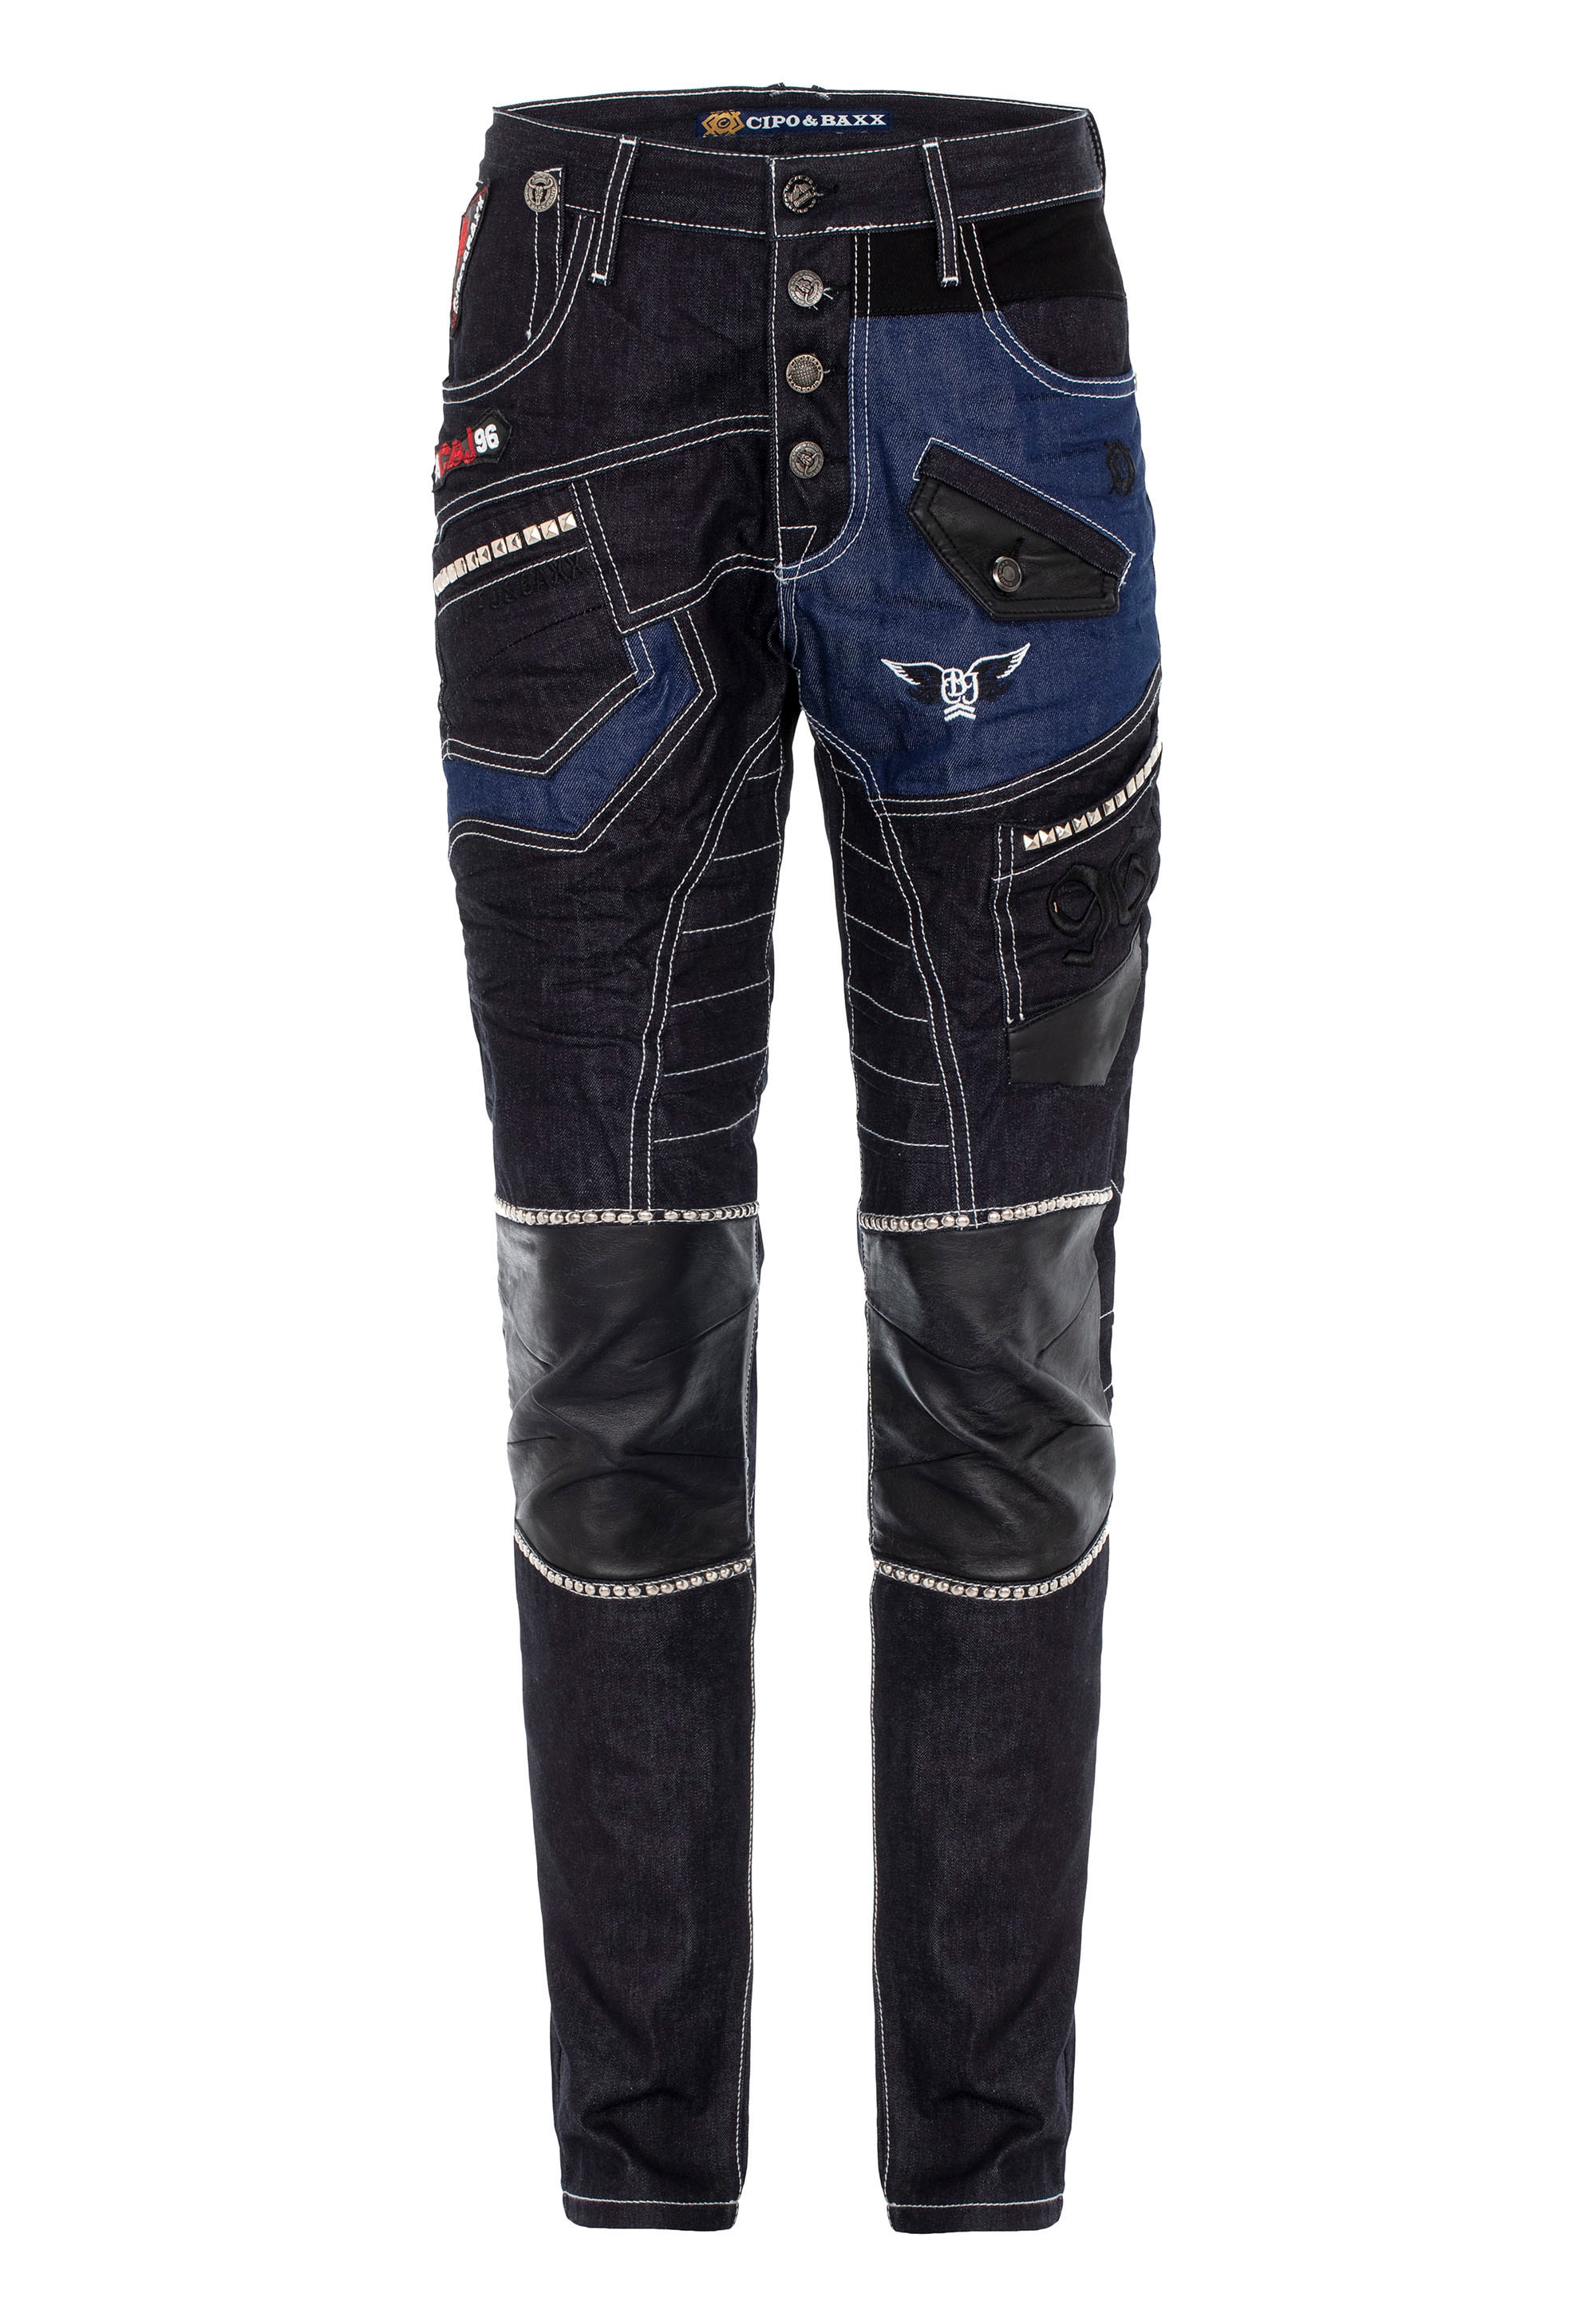 Cipo & Baxx Bequeme Jeans, im stylischen Design